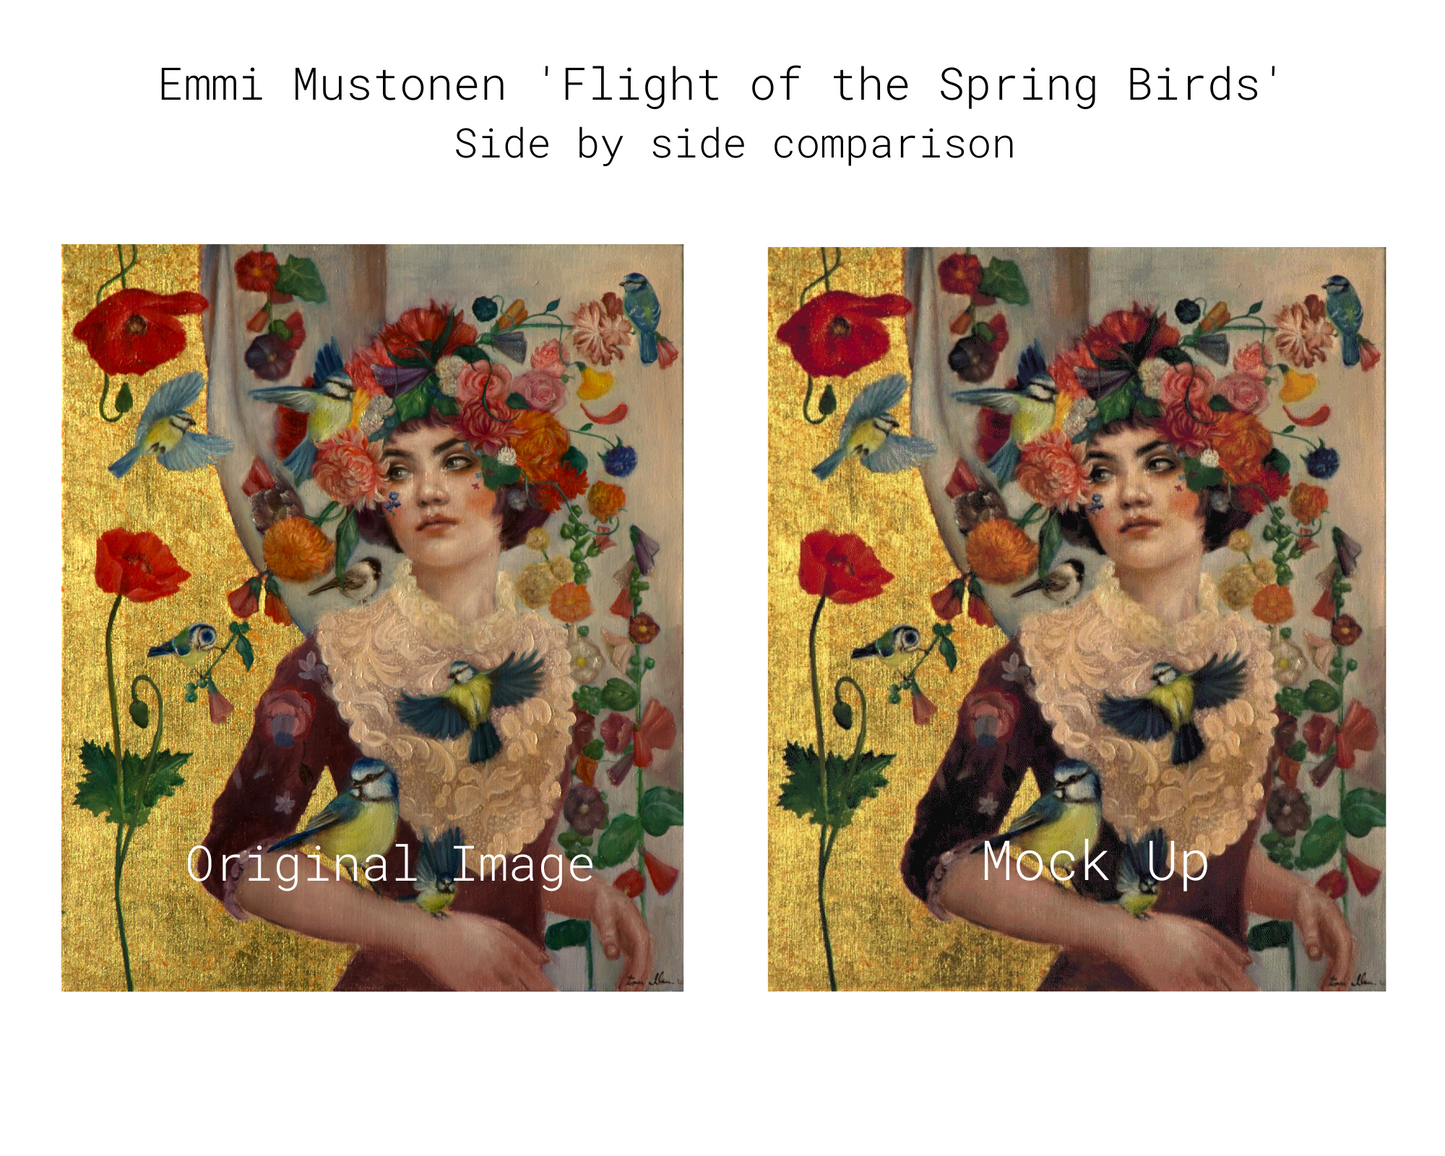 Flight of the Spring Birds